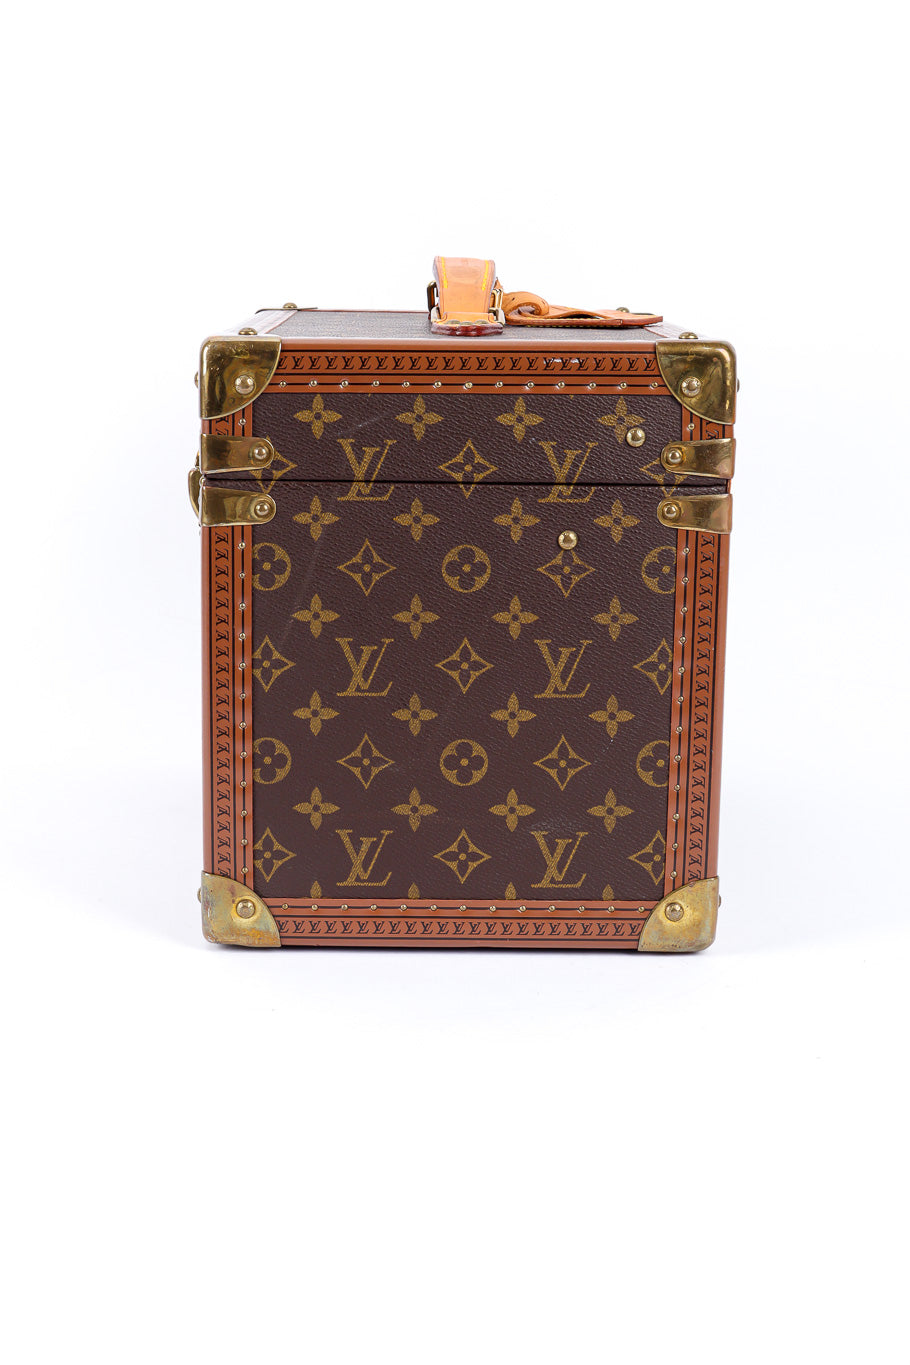 Vintage Louis Vuitton Classic Monogram Vanity Case side view @Recessla